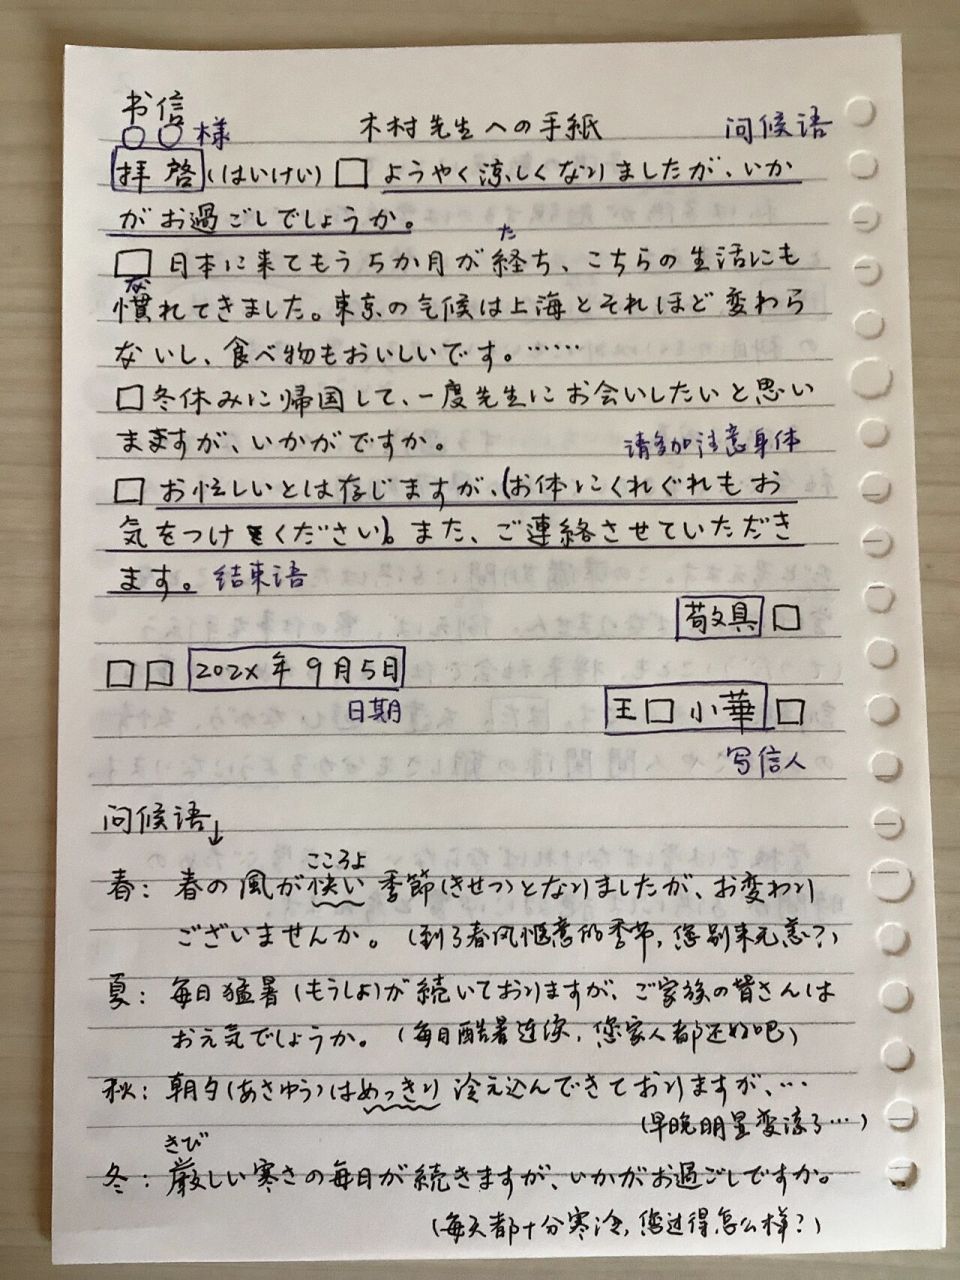 日语书信格式 写信图片